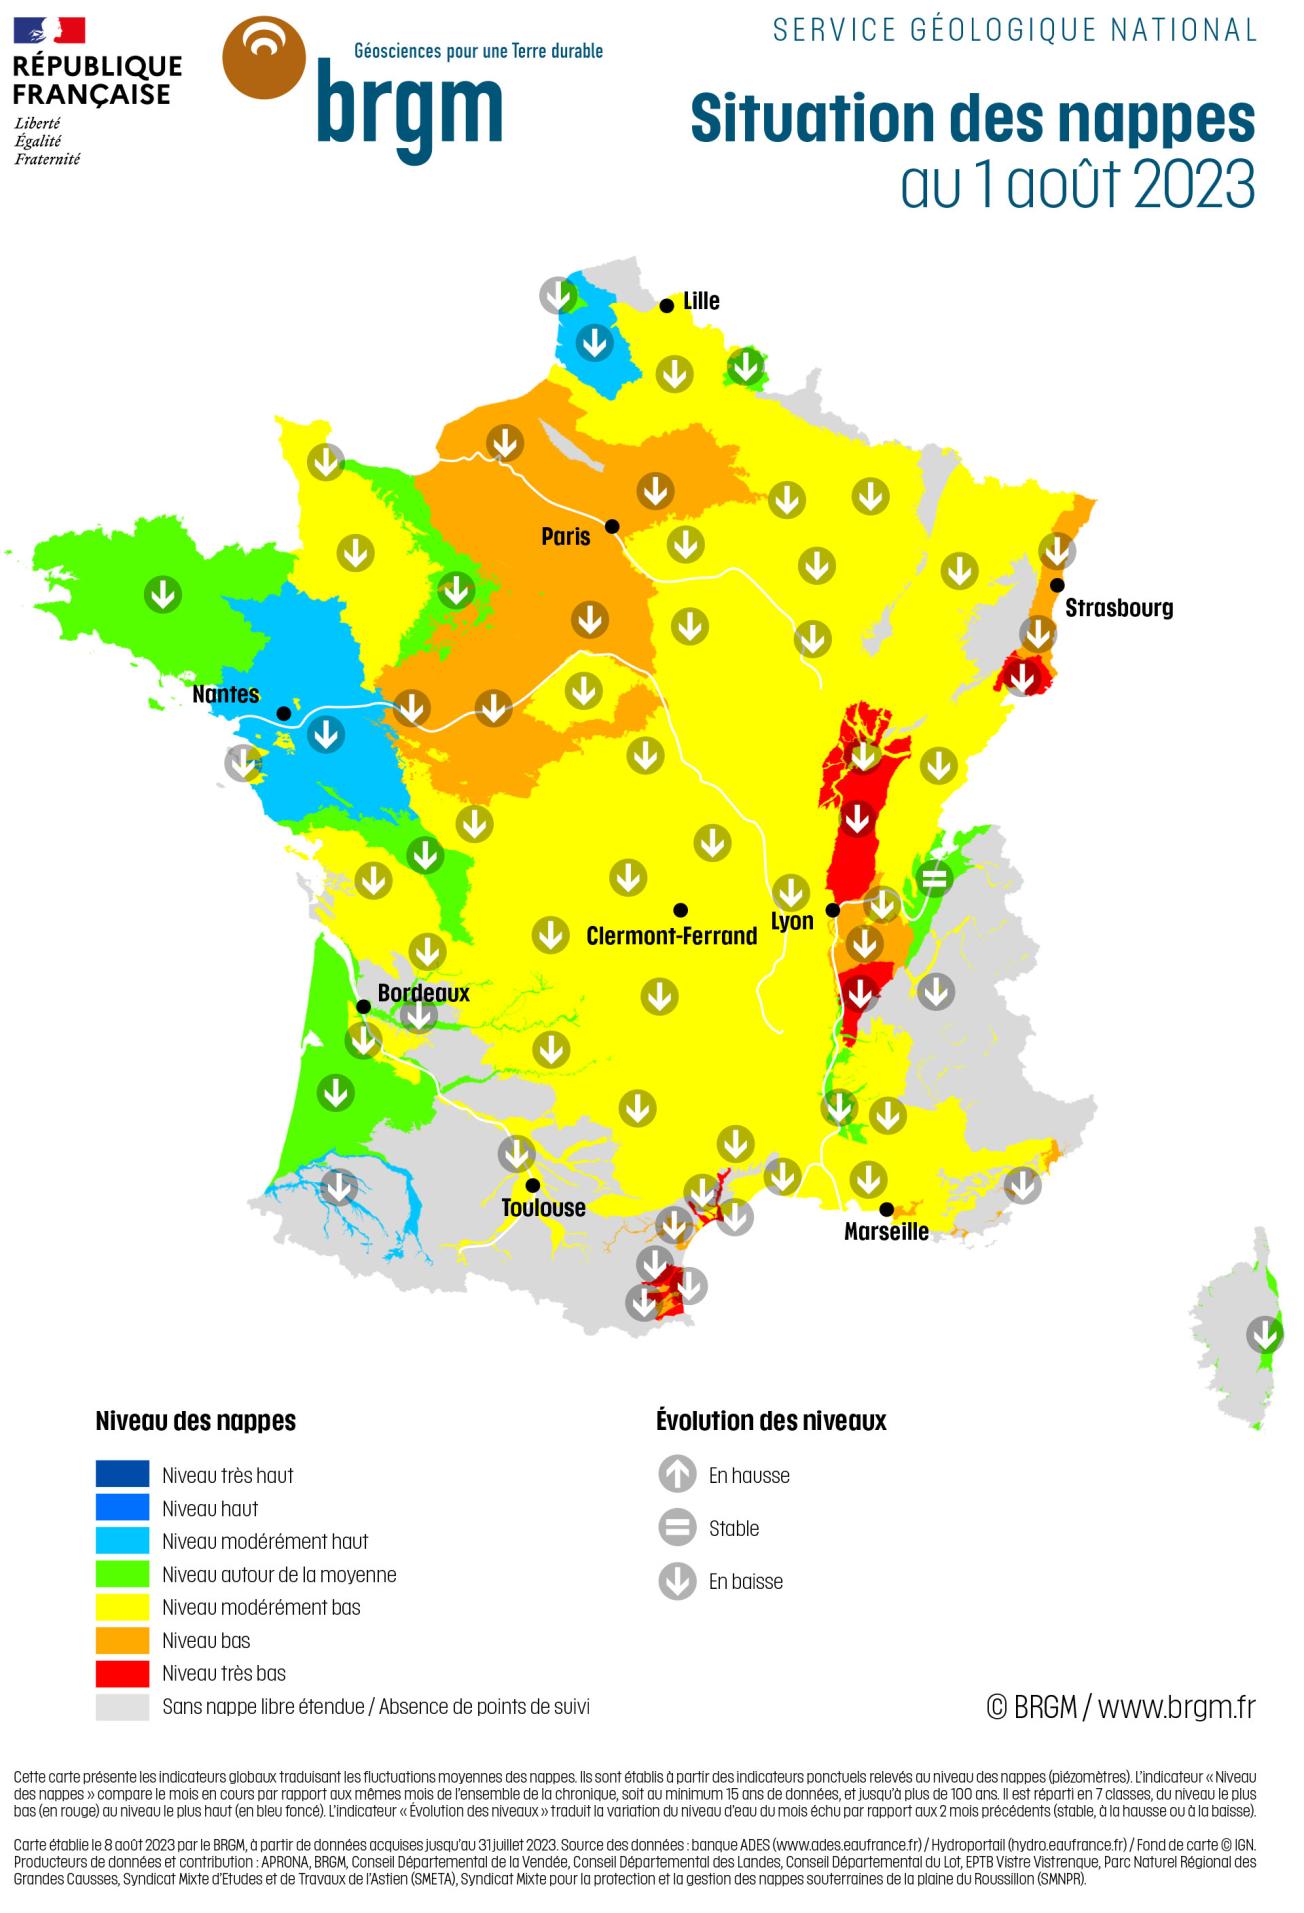 Carte de France hexagonale de la situation des nappes d'eau souterraine au 1er août 2023.